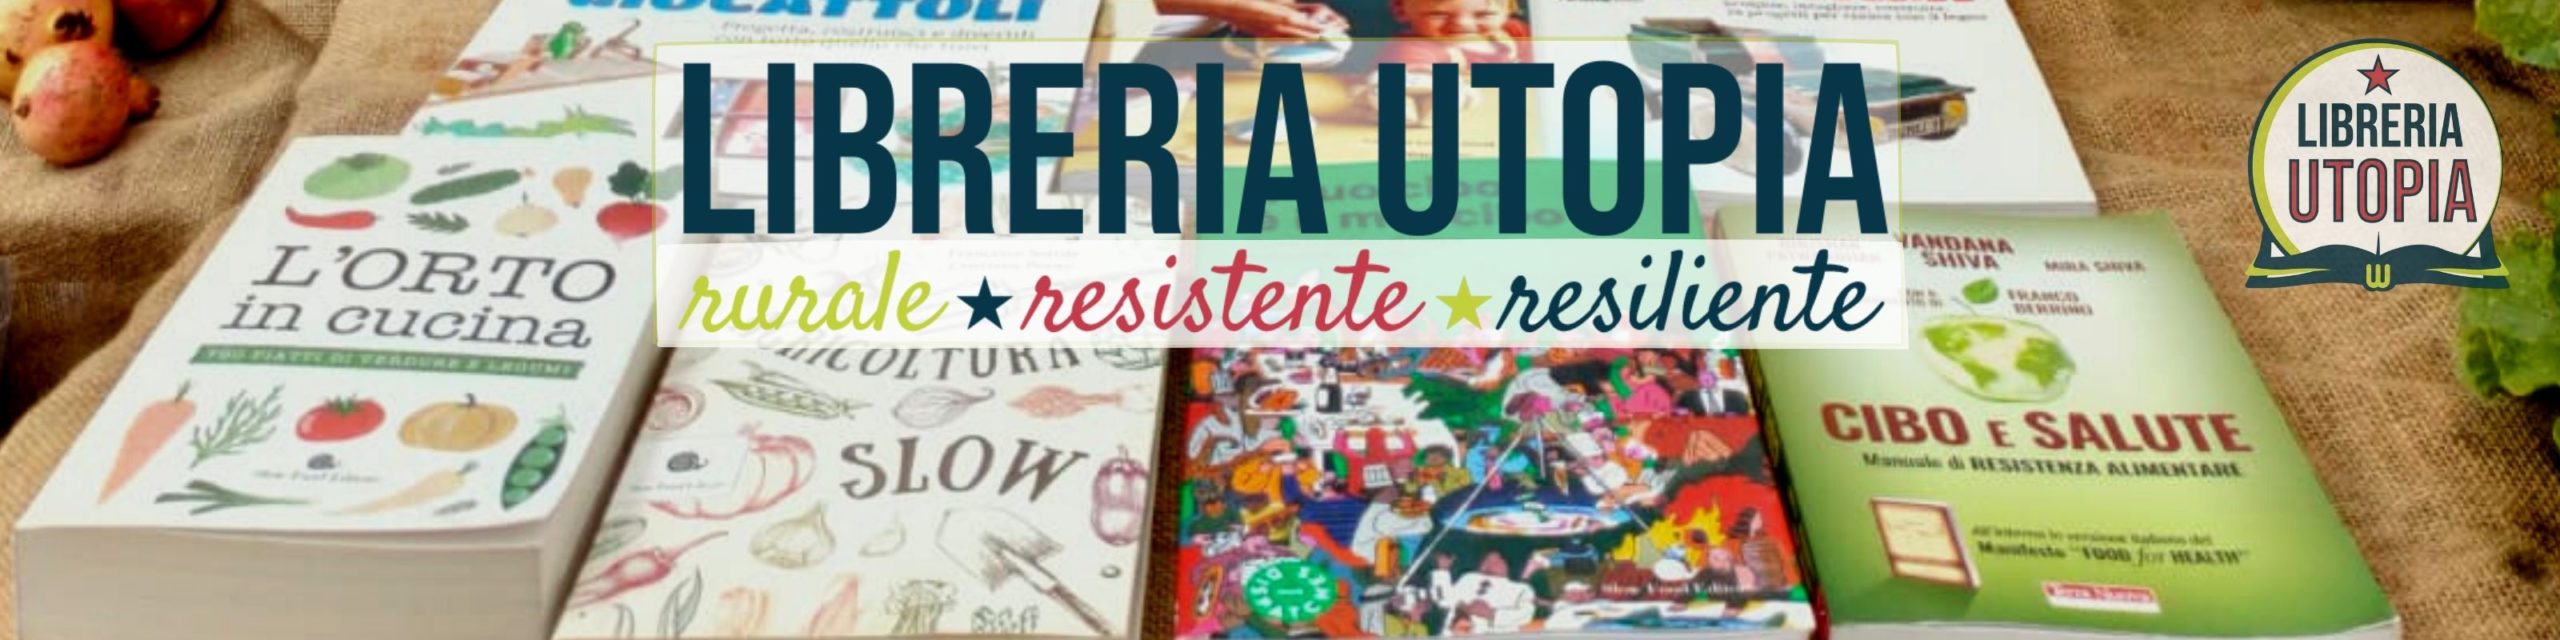 Fiera del libro permanente in Libreria Utopia Pratica! - Libreria Utopia  Pratica